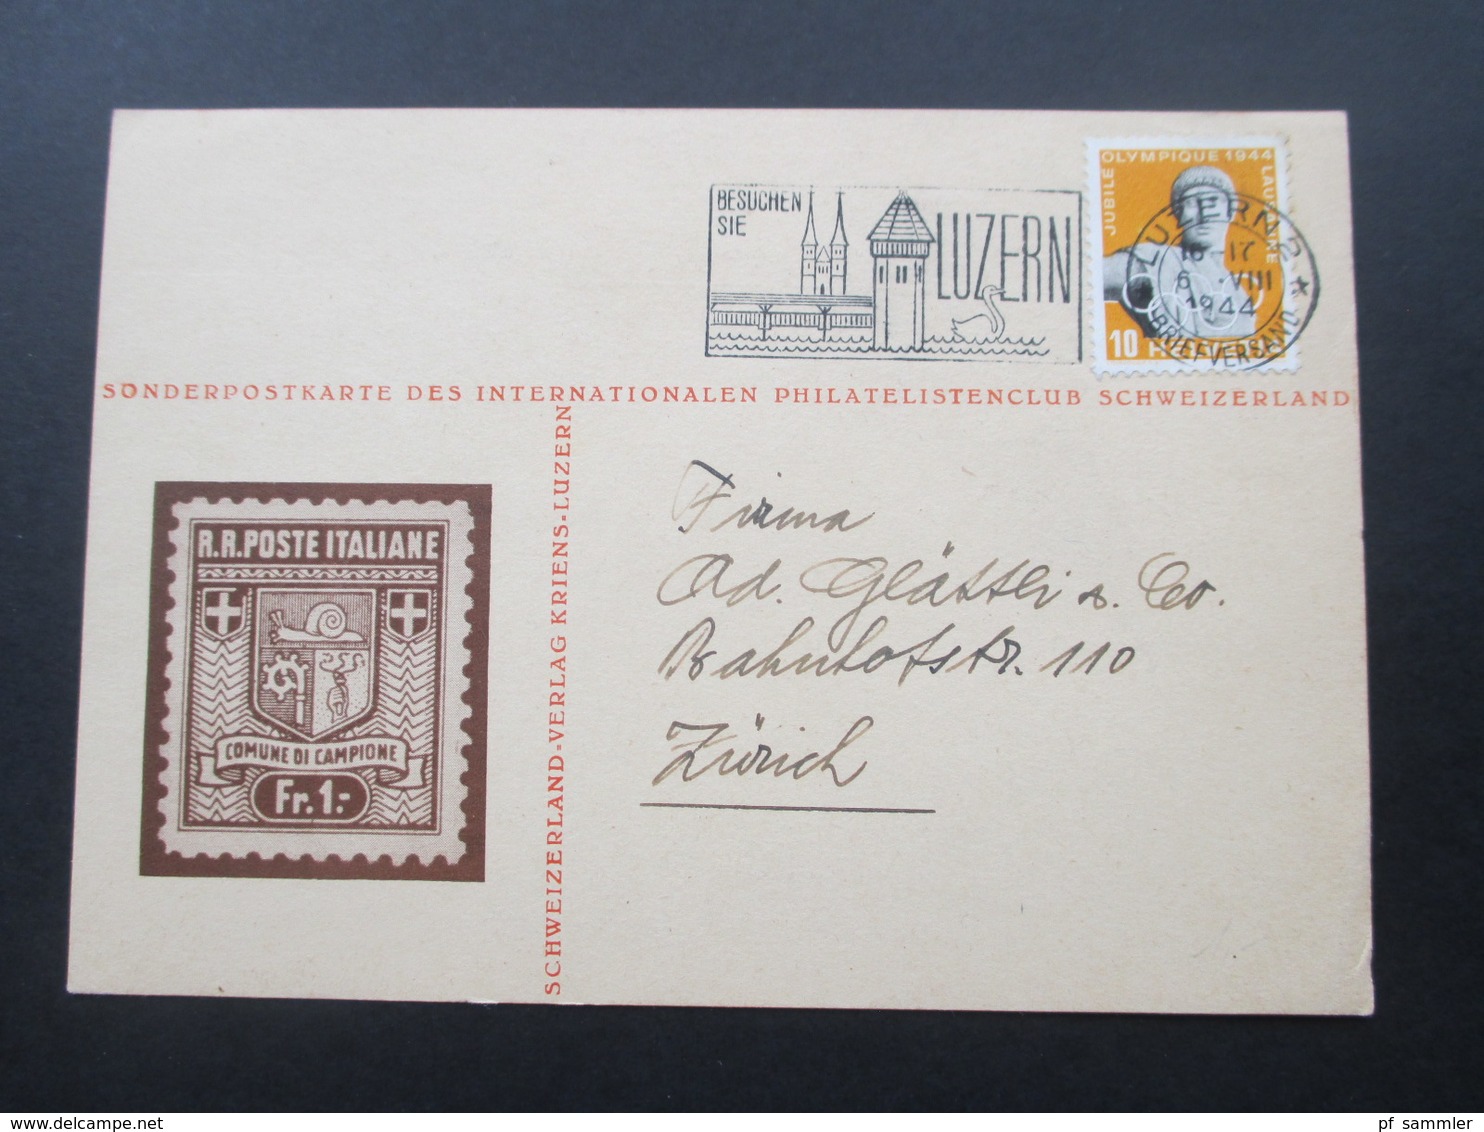 Schweiz 1944 Sonderpostkarte Des Internationalen Philatelistenclub Schweizerland. Schweizerland Verlag Kriens - Briefe U. Dokumente